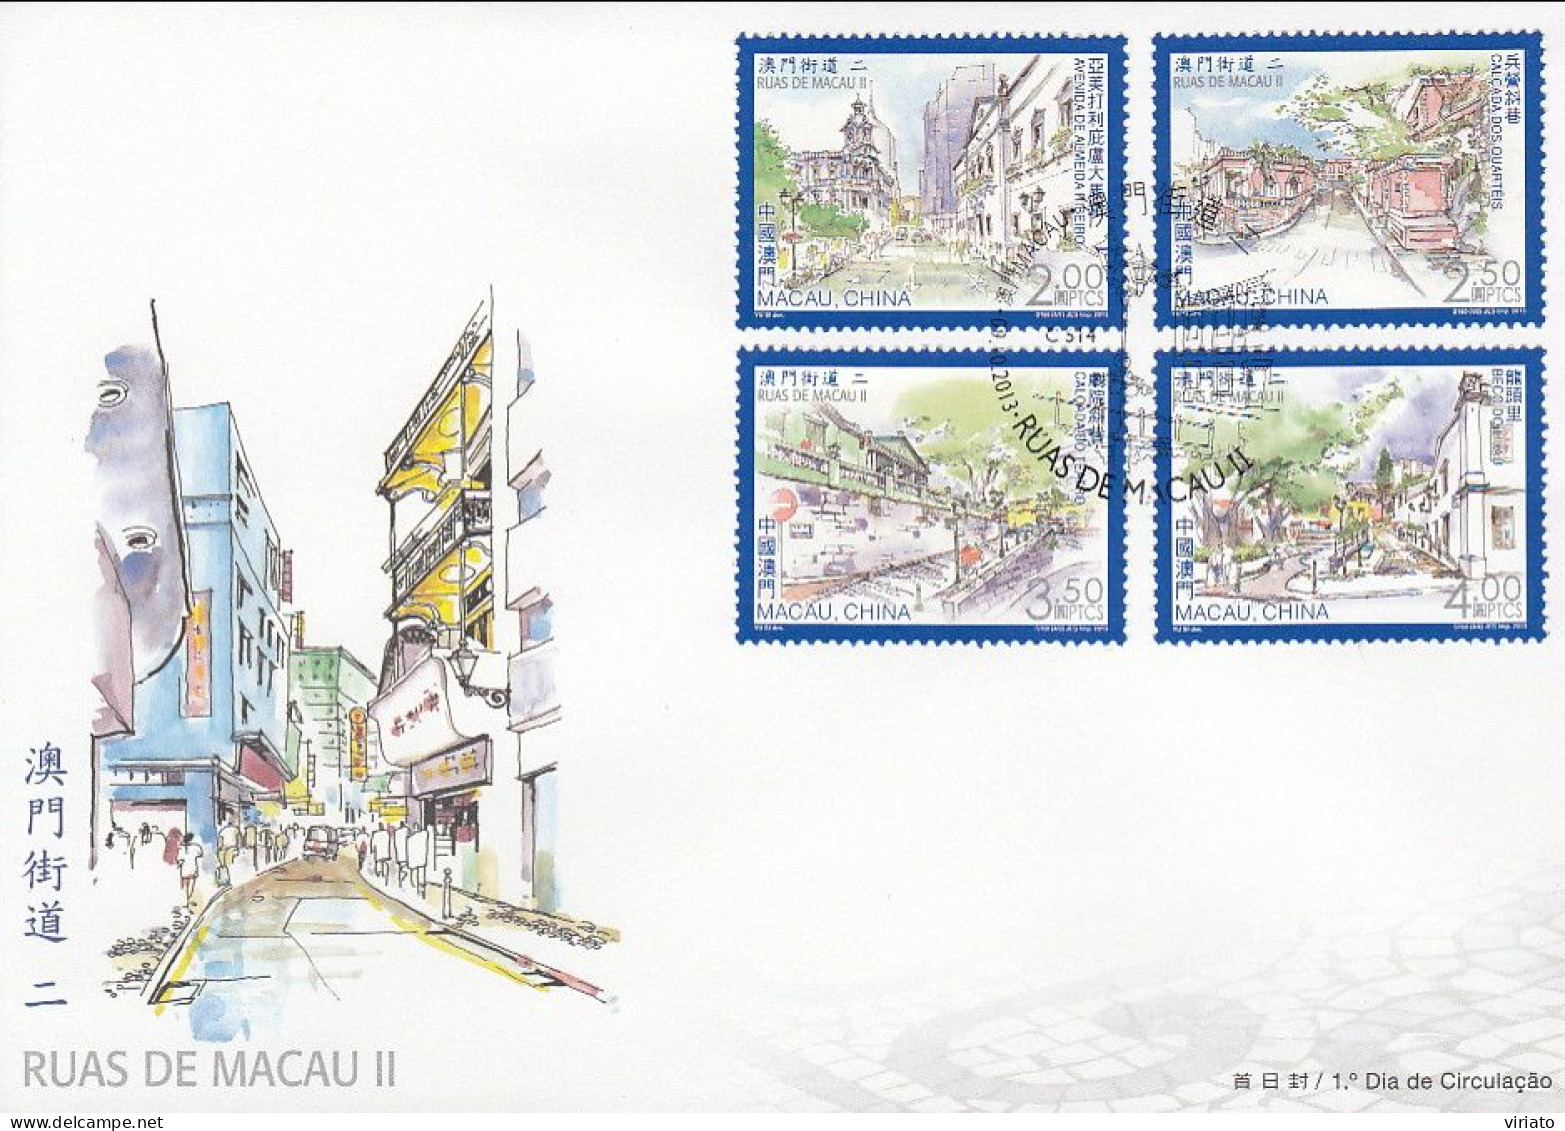 ENA161 - Ruas De Macau II - 09.10.2013 - FDC